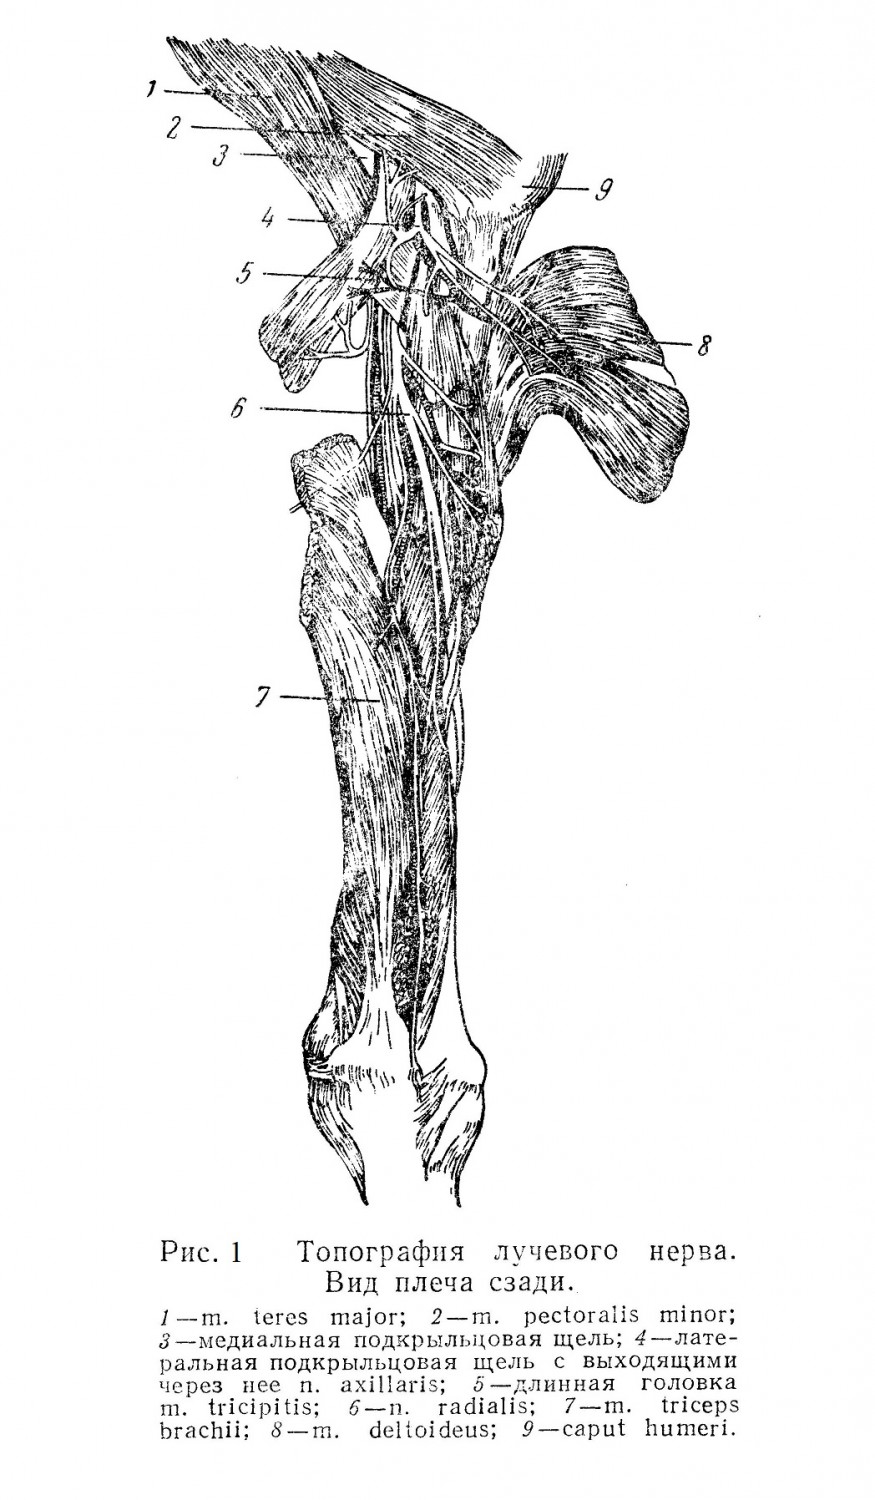 Топография лучевого нерва. Вид плеча сзади.